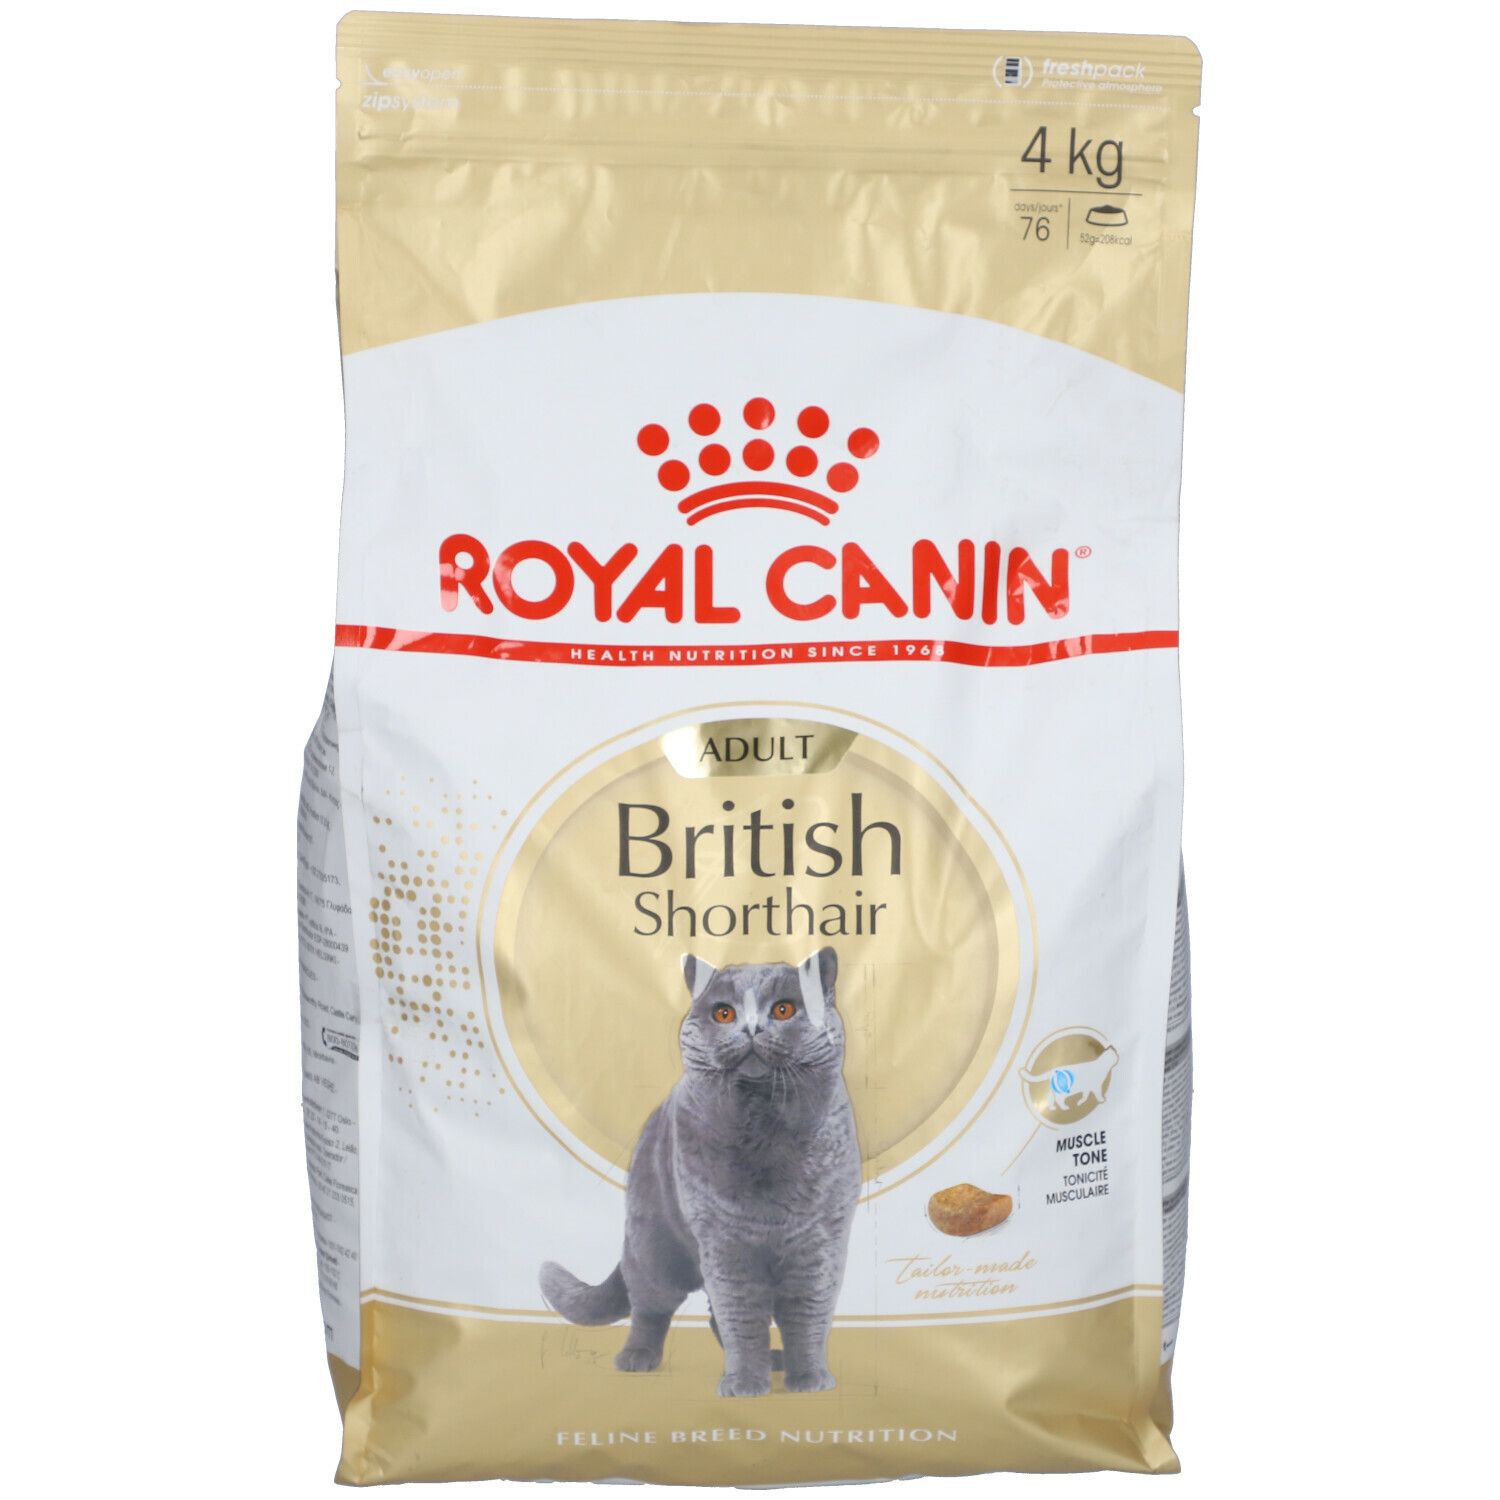 Royal Canin® British Shorthair